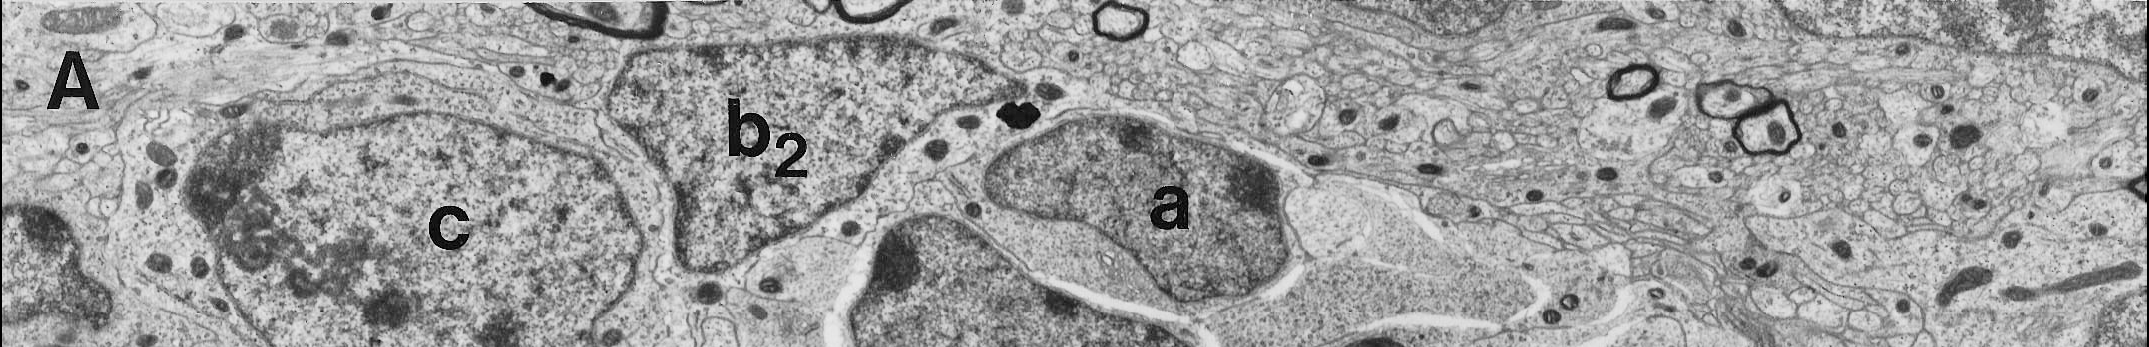 3. ábra A szubventrikuláris zónában található sejttípusok elektronmikroszkópos képe Doetsch és mtsai 1997 Journal of Neuroscience Jelenlegi ismereteink szerint a B-sejtek